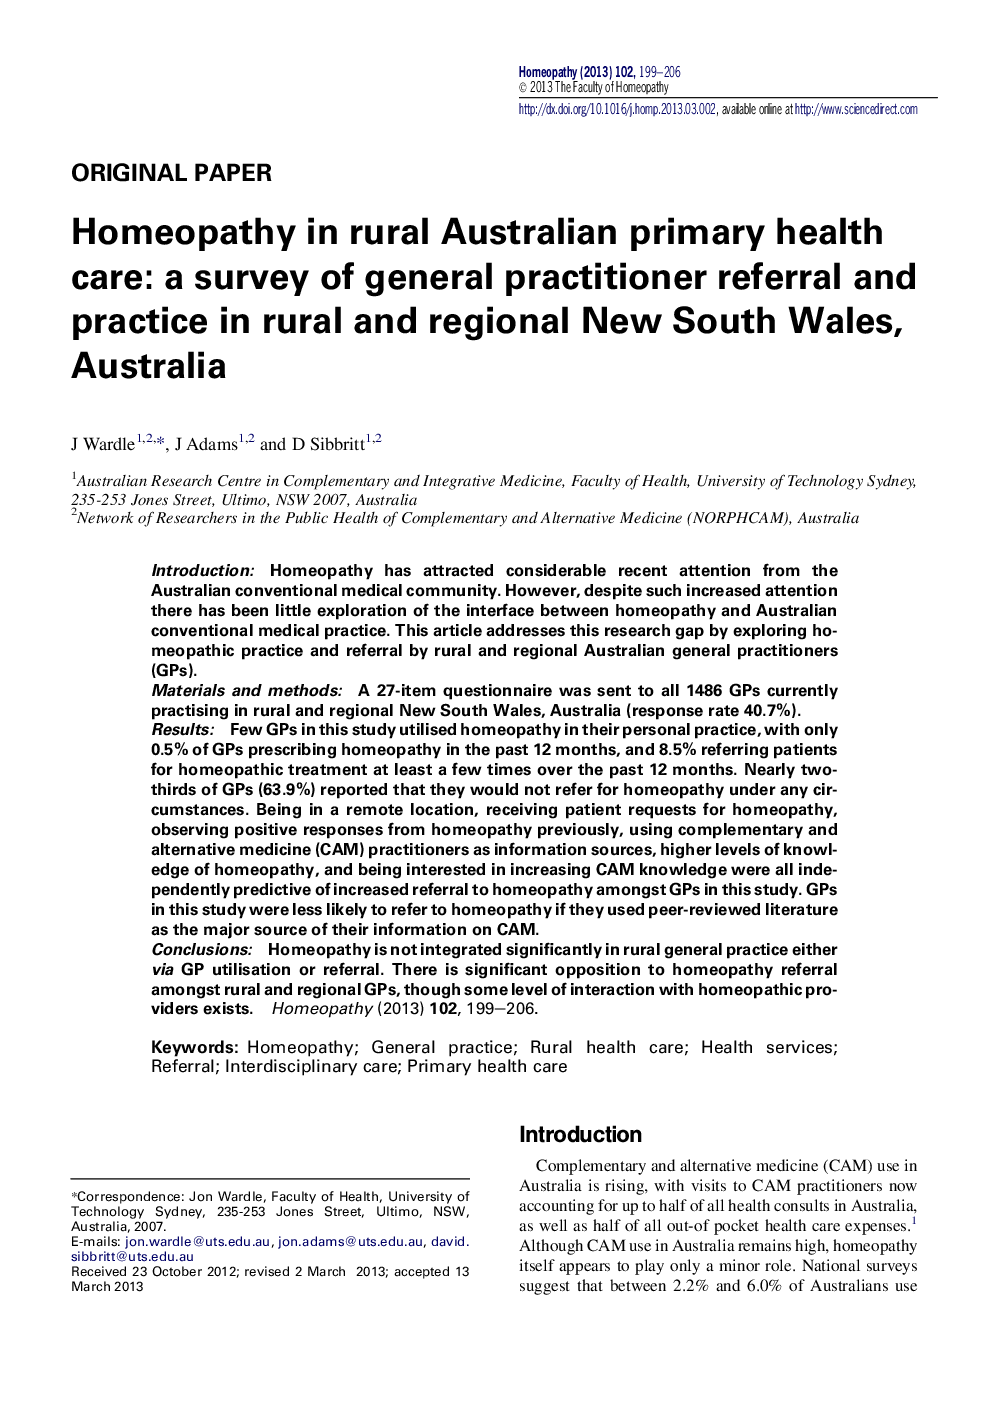 هومیوپاتی در مراقبت های بهداشتی اولیه روستایی استرالیا: یک نظرسنجی از ارجاع و تمرین عمومی پزشکان در مناطق روستایی و منطقه نیو سات ولز، استرالیا